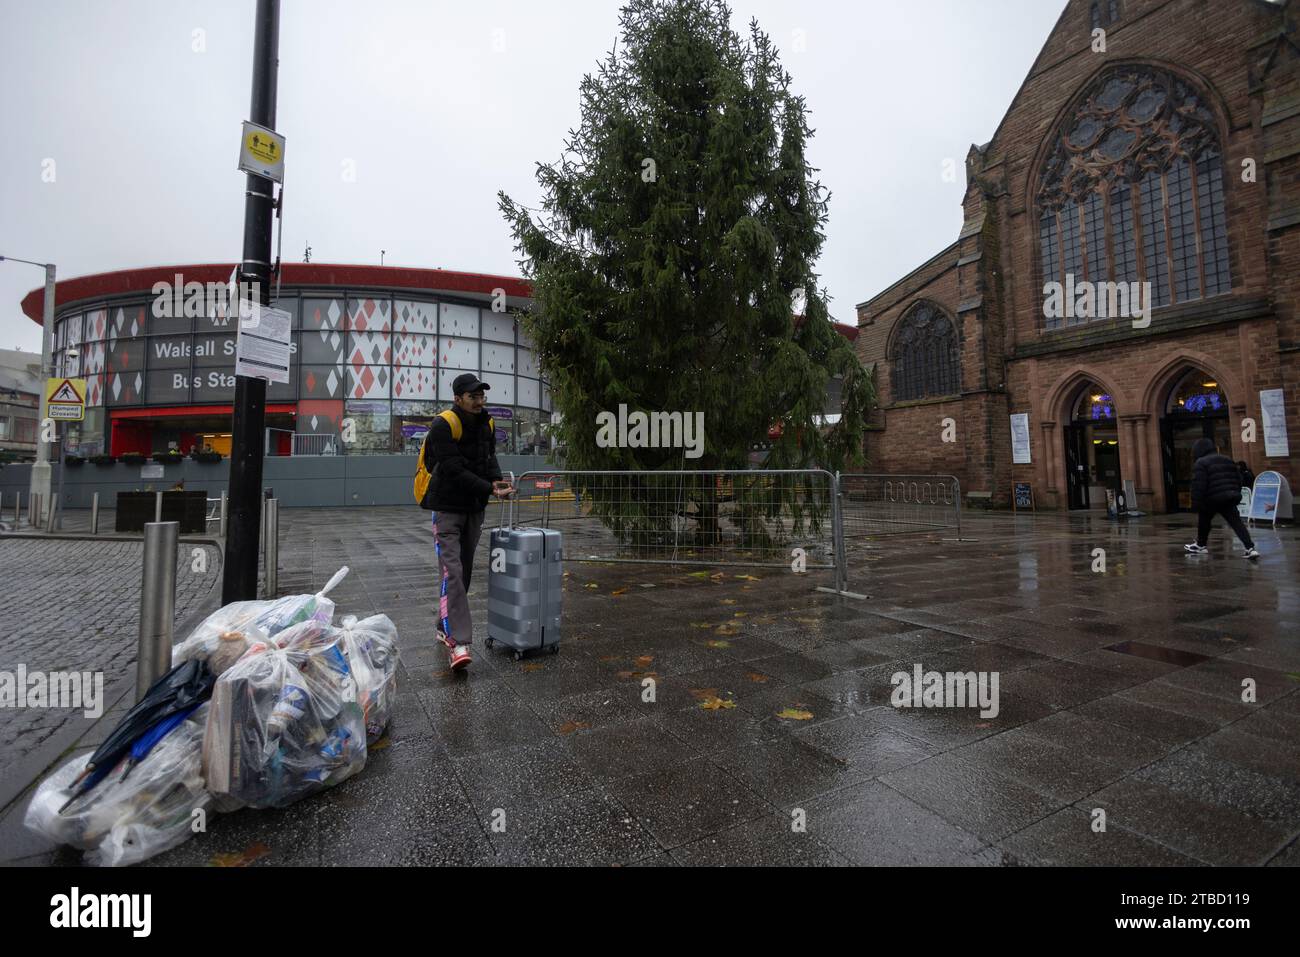 Walsall è stato votato per avere uno dei peggiori spettacoli natalizi nel Regno Unito durante le festività natalizie, tra cui un albero spogliato a causa della povertà, Regno Unito Foto Stock